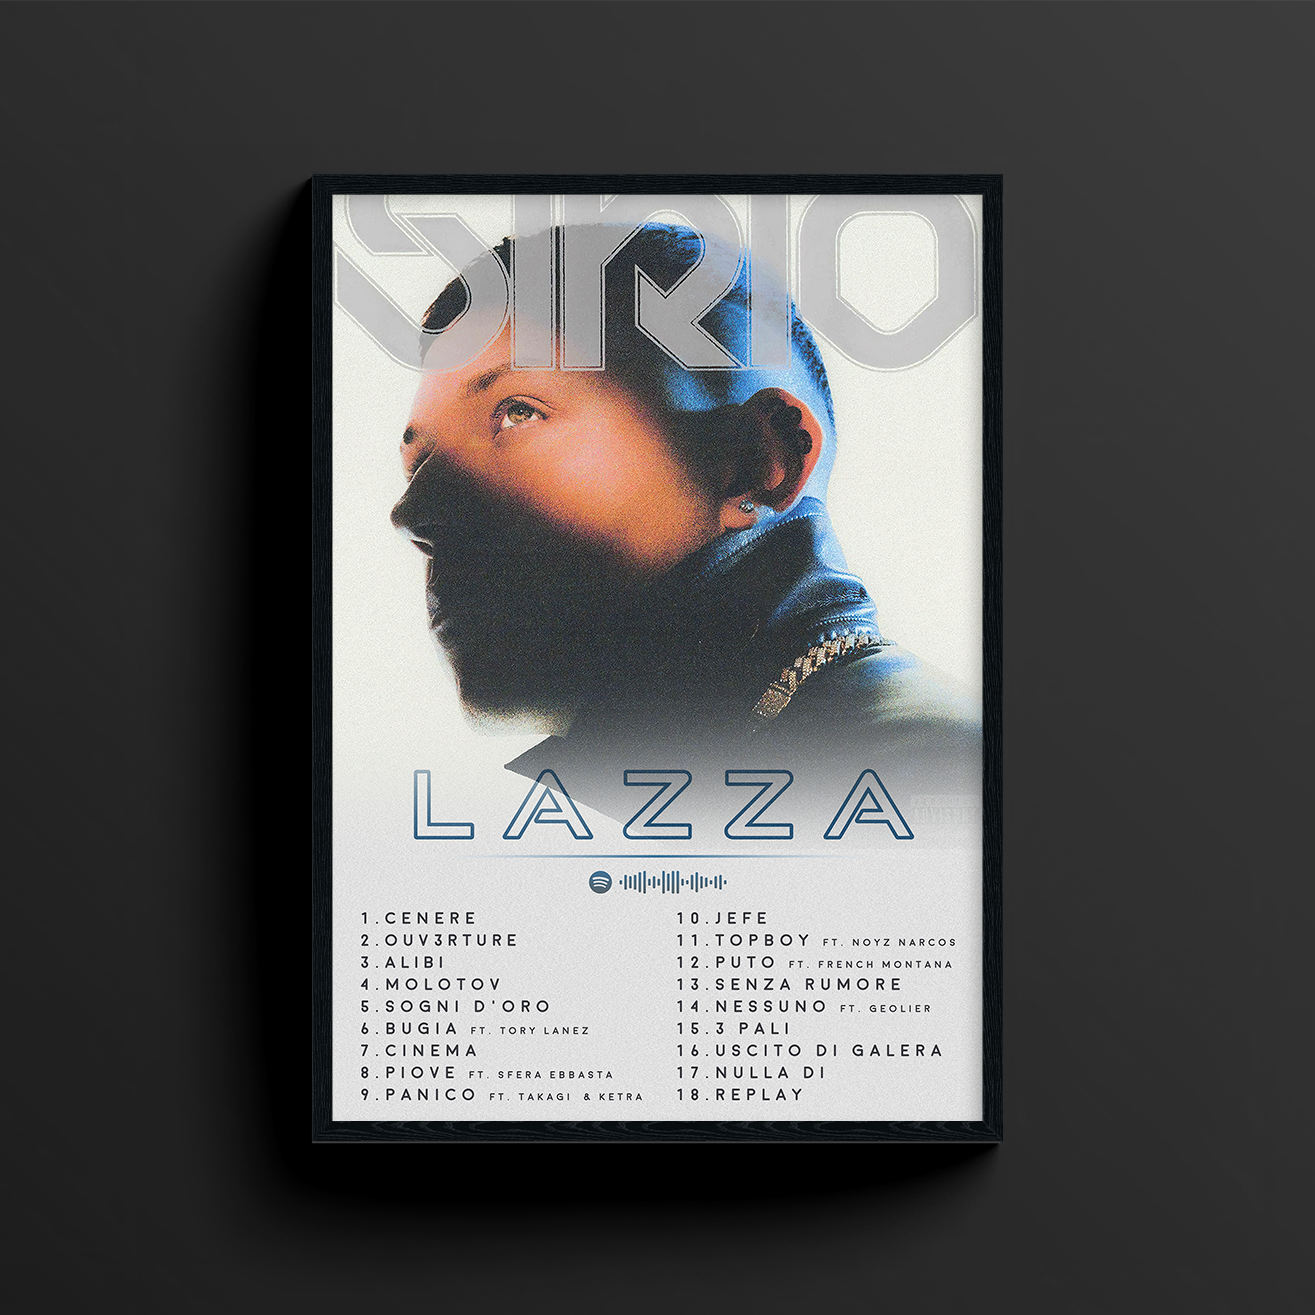 Lazza, 'Sirio' è l'album più venduto dell'anno